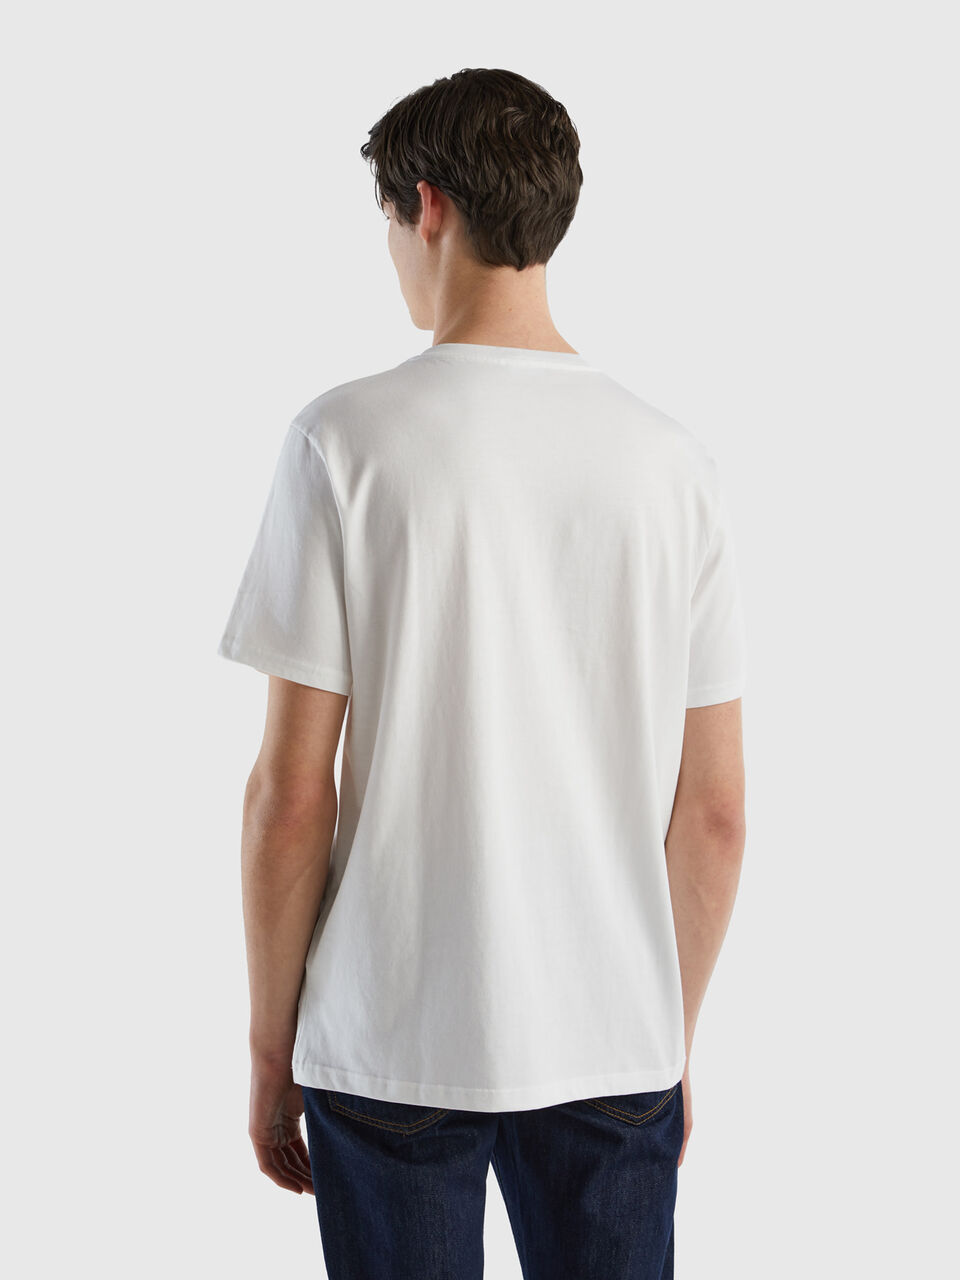 T-shirt Uni Blanc - Basique 100% Coton Bio GOTS